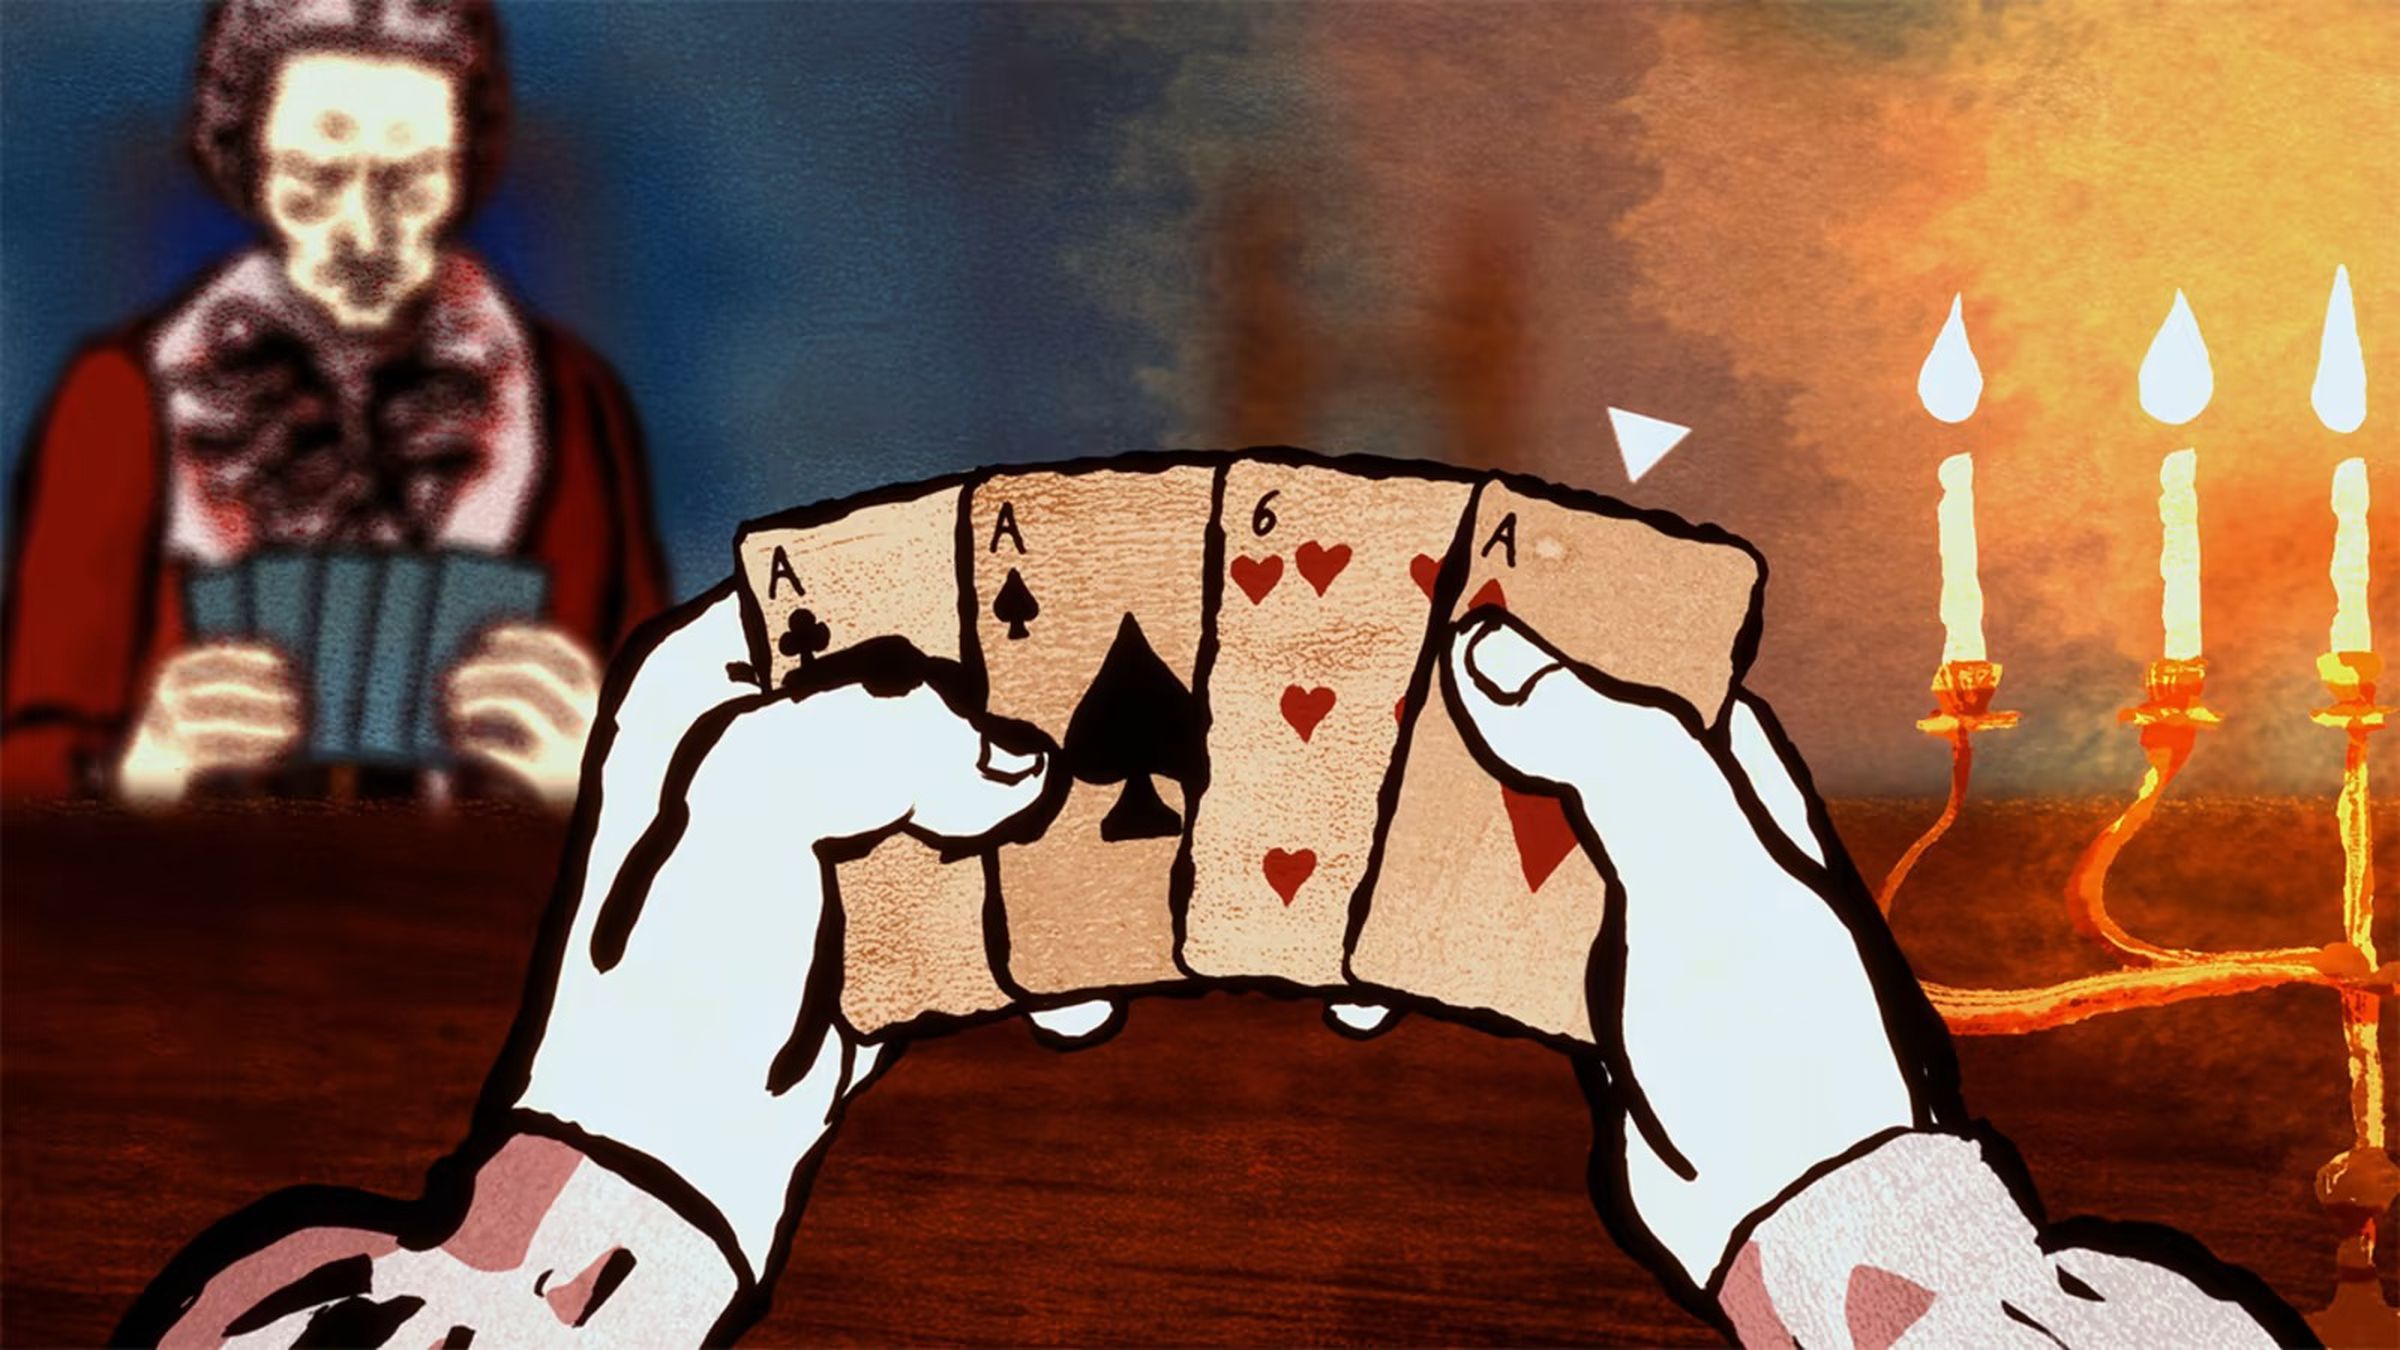 Widok z pierwszej osoby na cztery karty — trzy asy i szóstkę kier — z mężczyzną po drugiej stronie stołu.